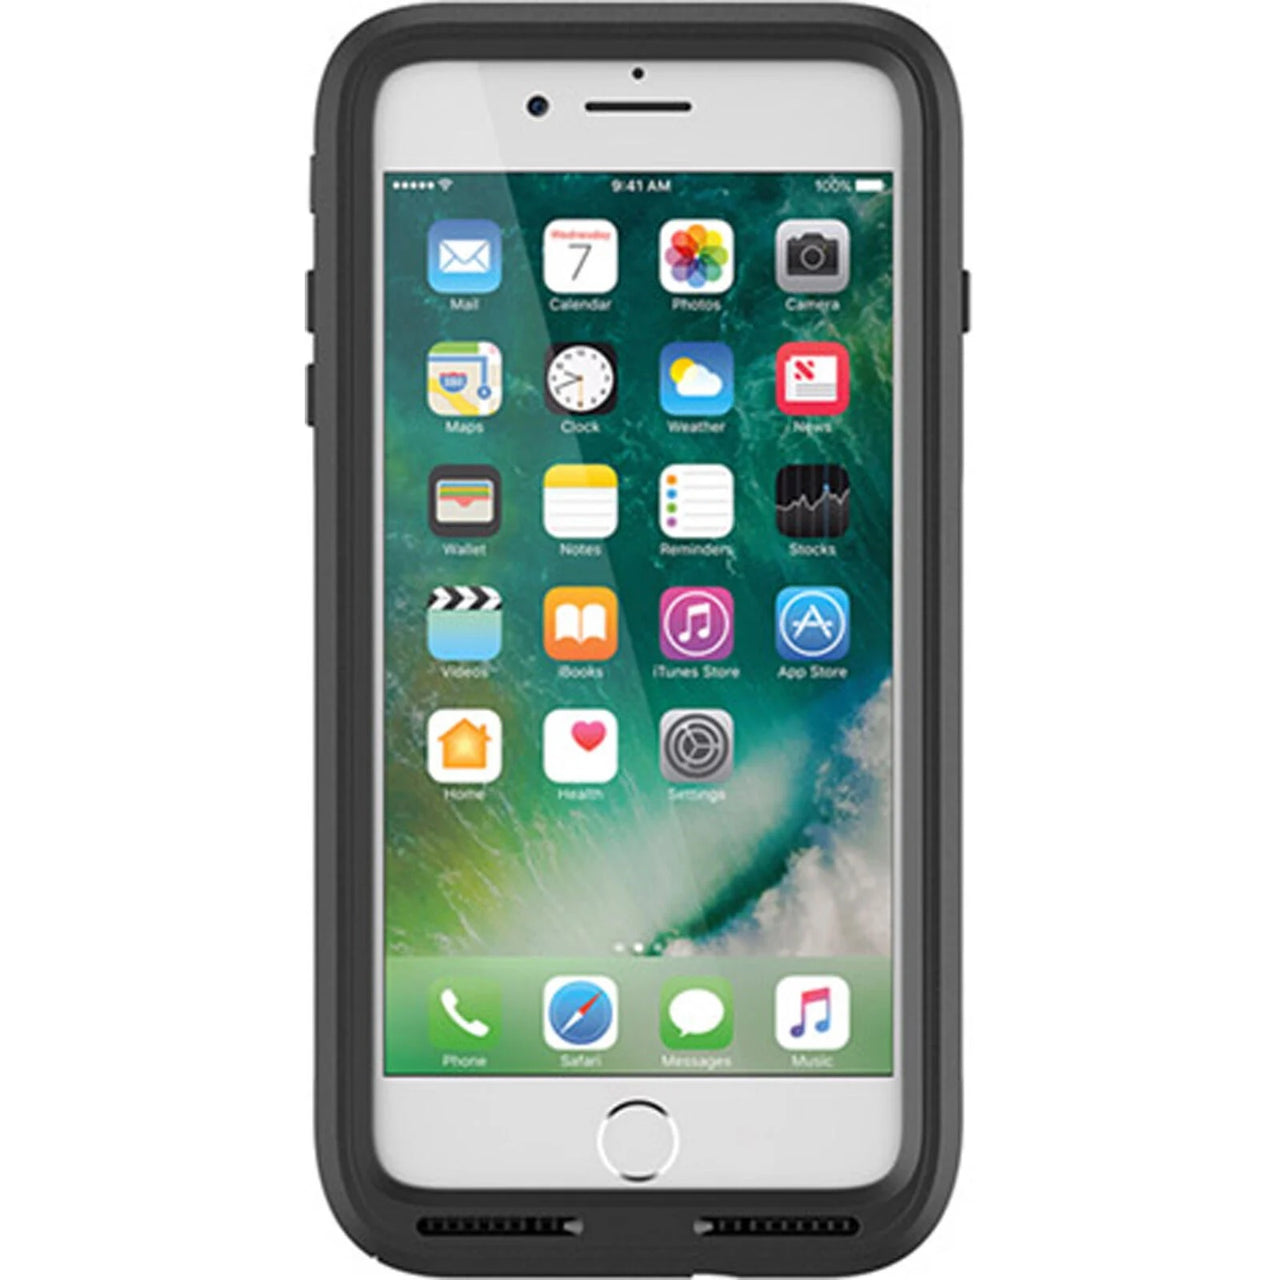 OtterBox Pursuit Apple iPhone 8/7 Plus Case - Black